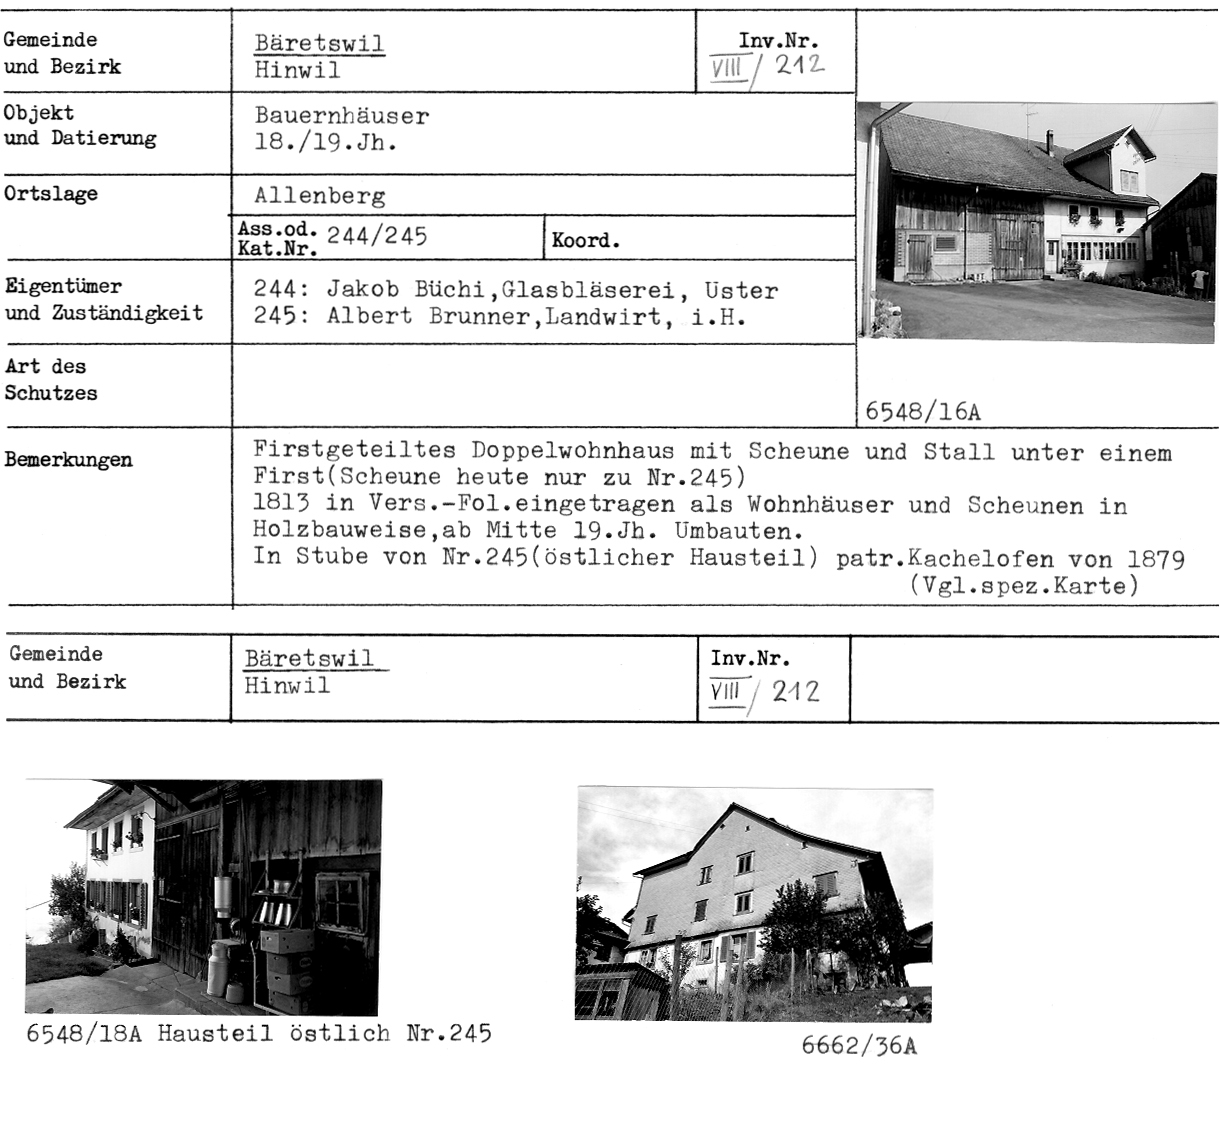 Bauernhäuser, 18./19. Jahrhundert, Allenberg